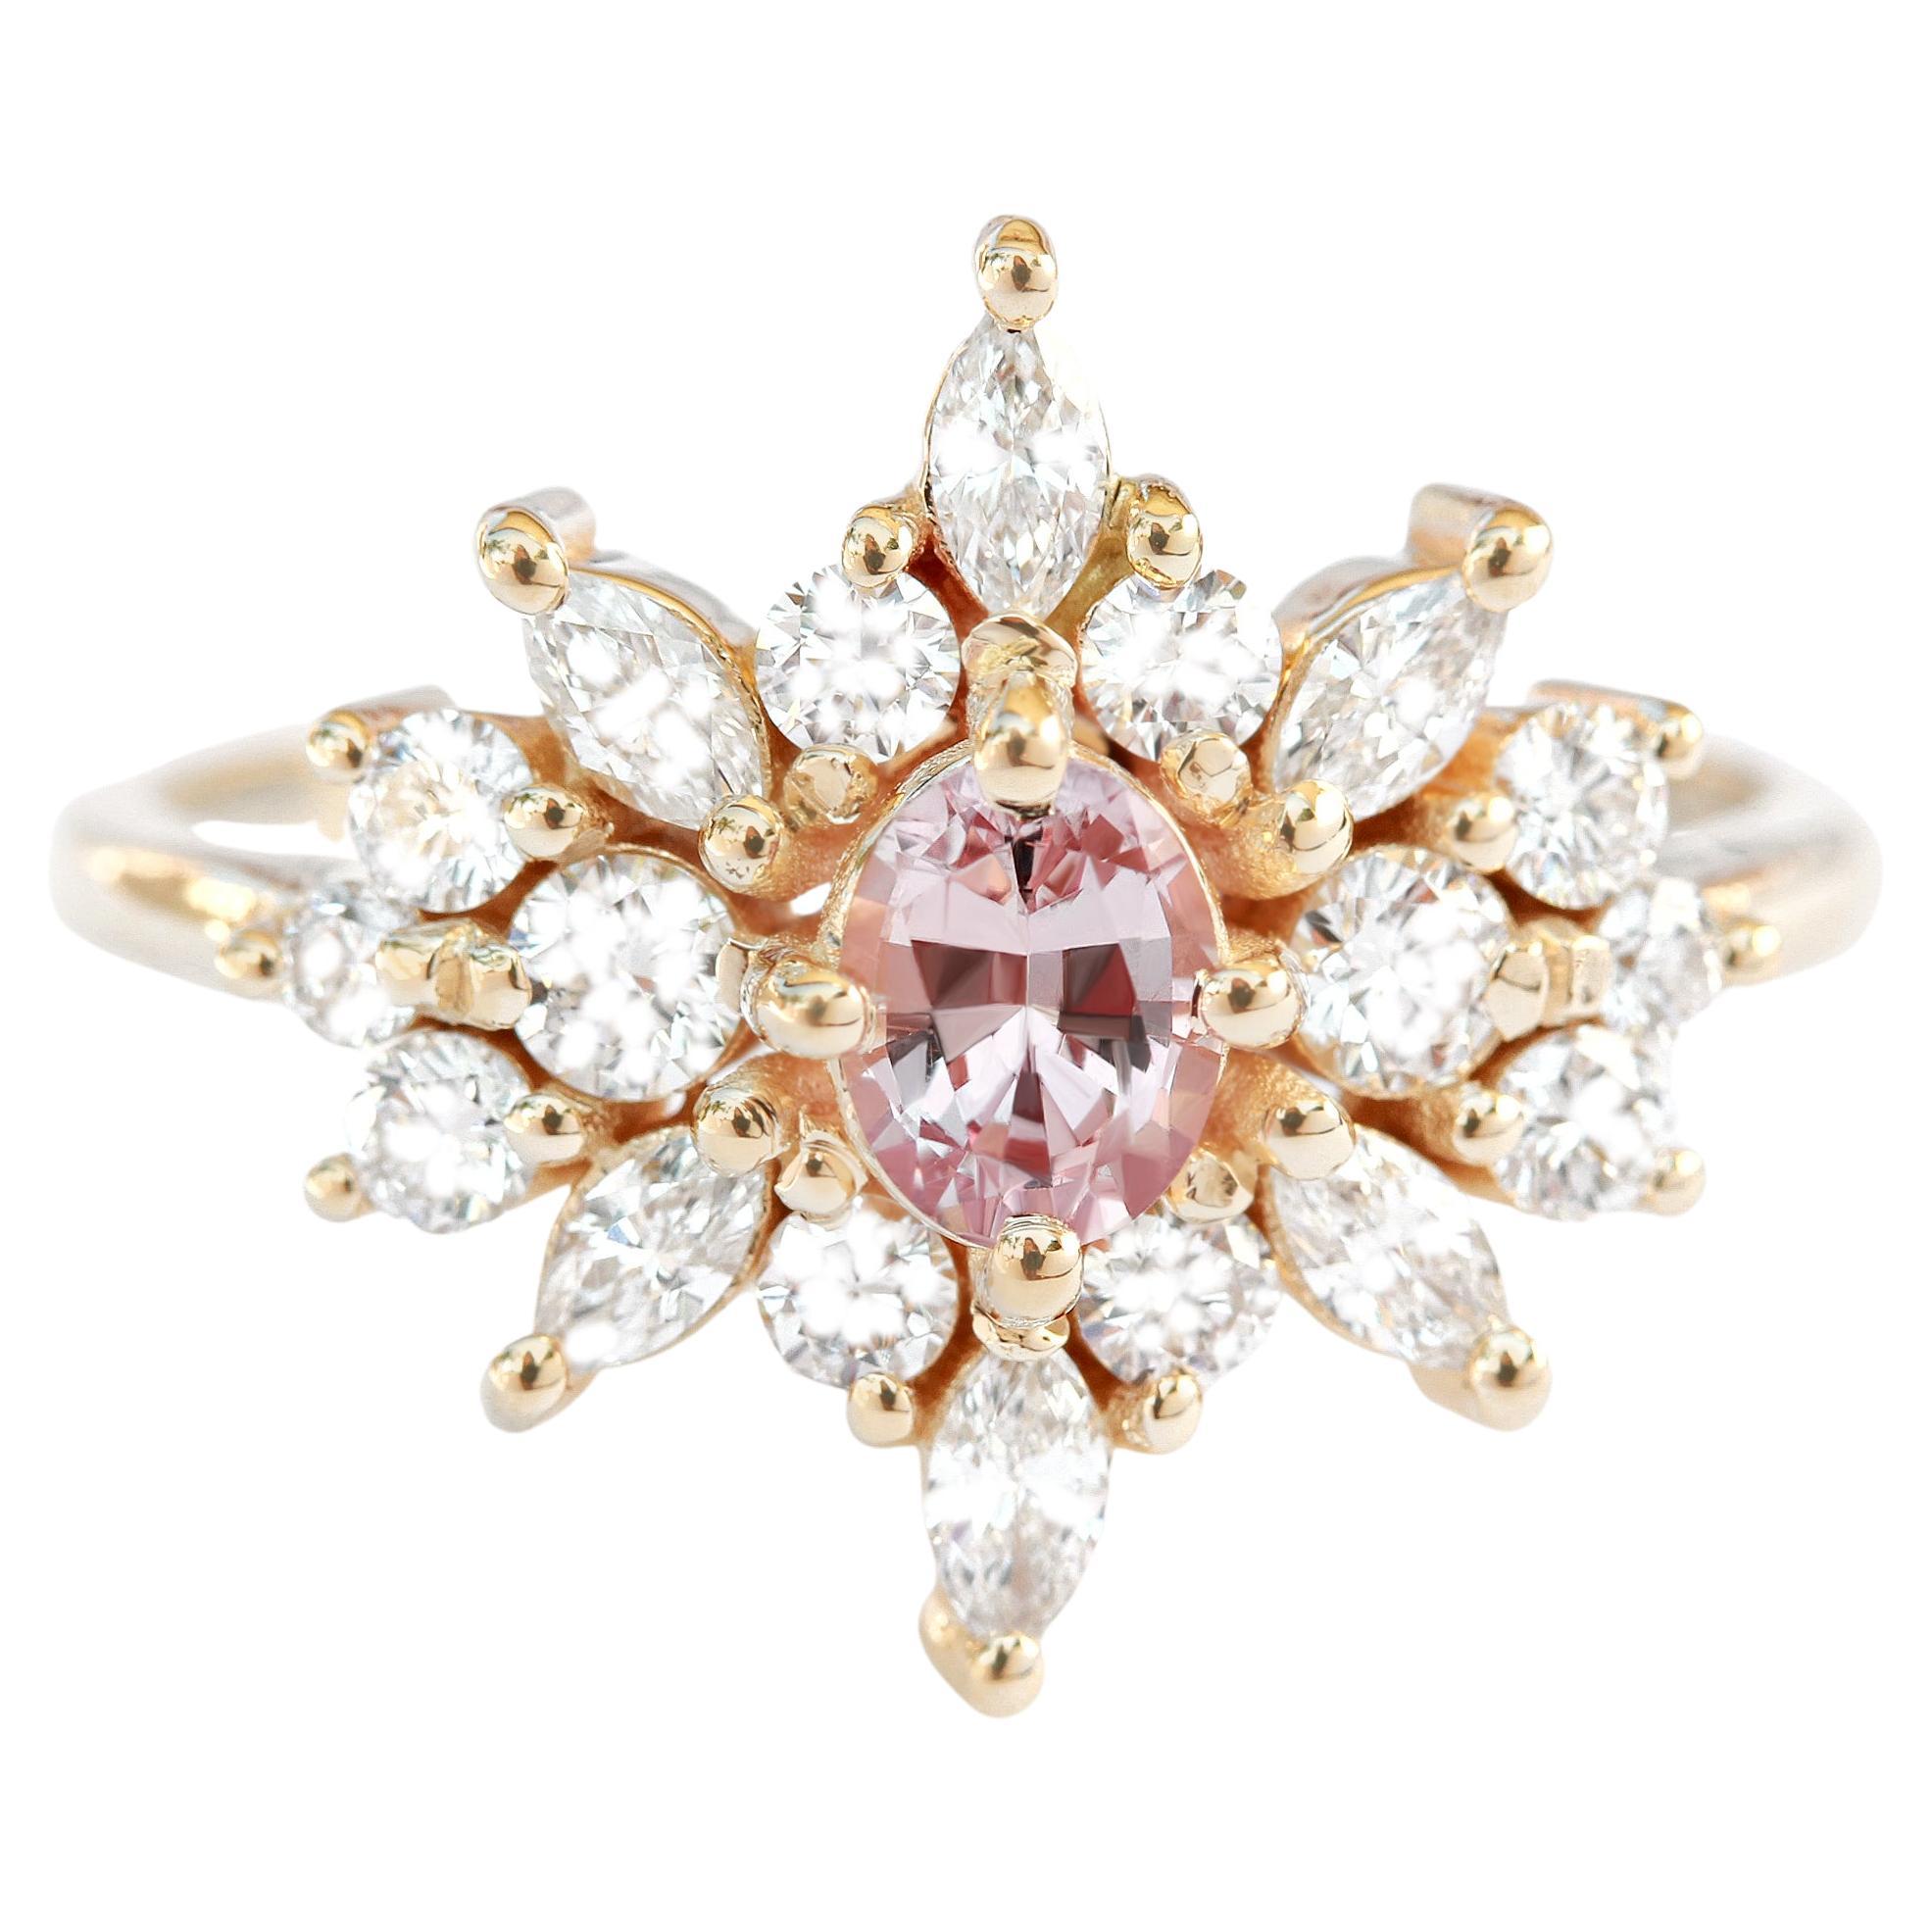 Oval Pink Sapphire & Diamonds Unique Engagement Ring, Alternative Bride, Phoenix For Sale